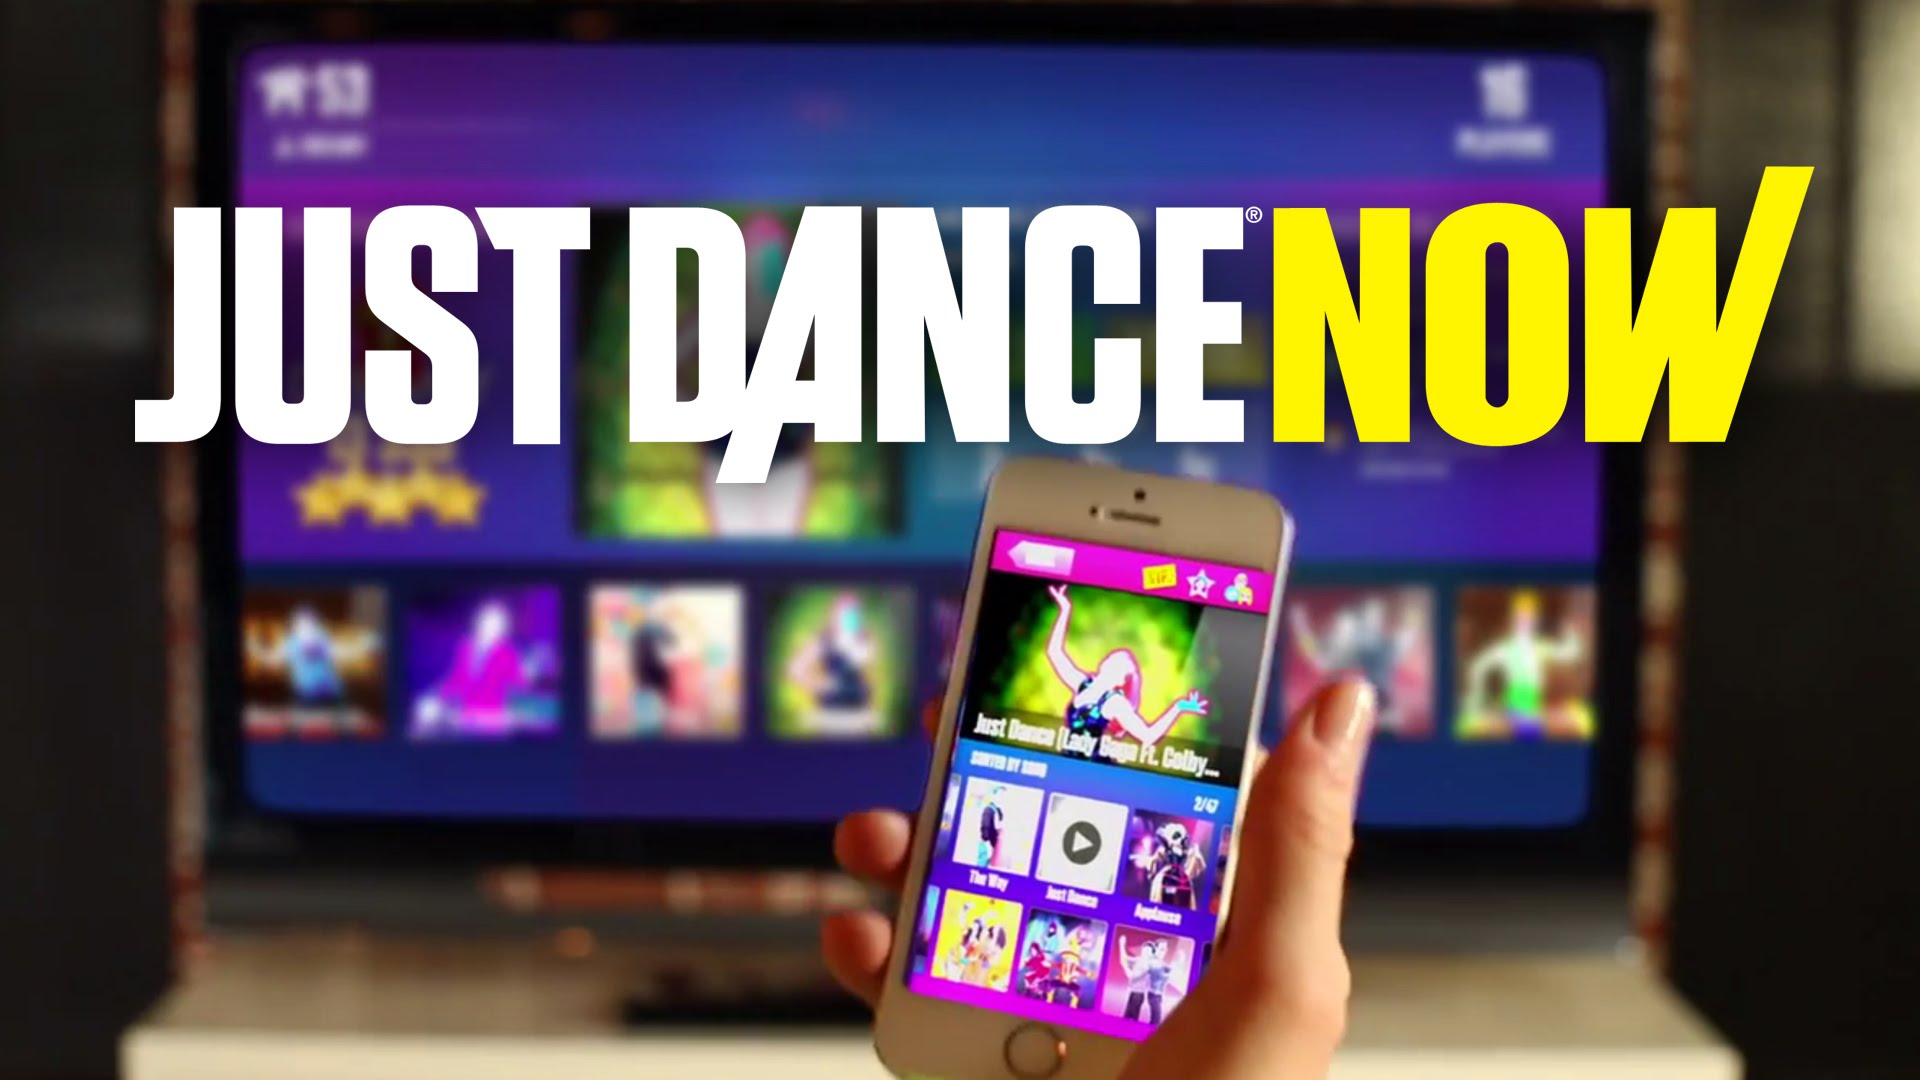 Just Dance 2017: veja a lista completa de músicas do game - Canaltech